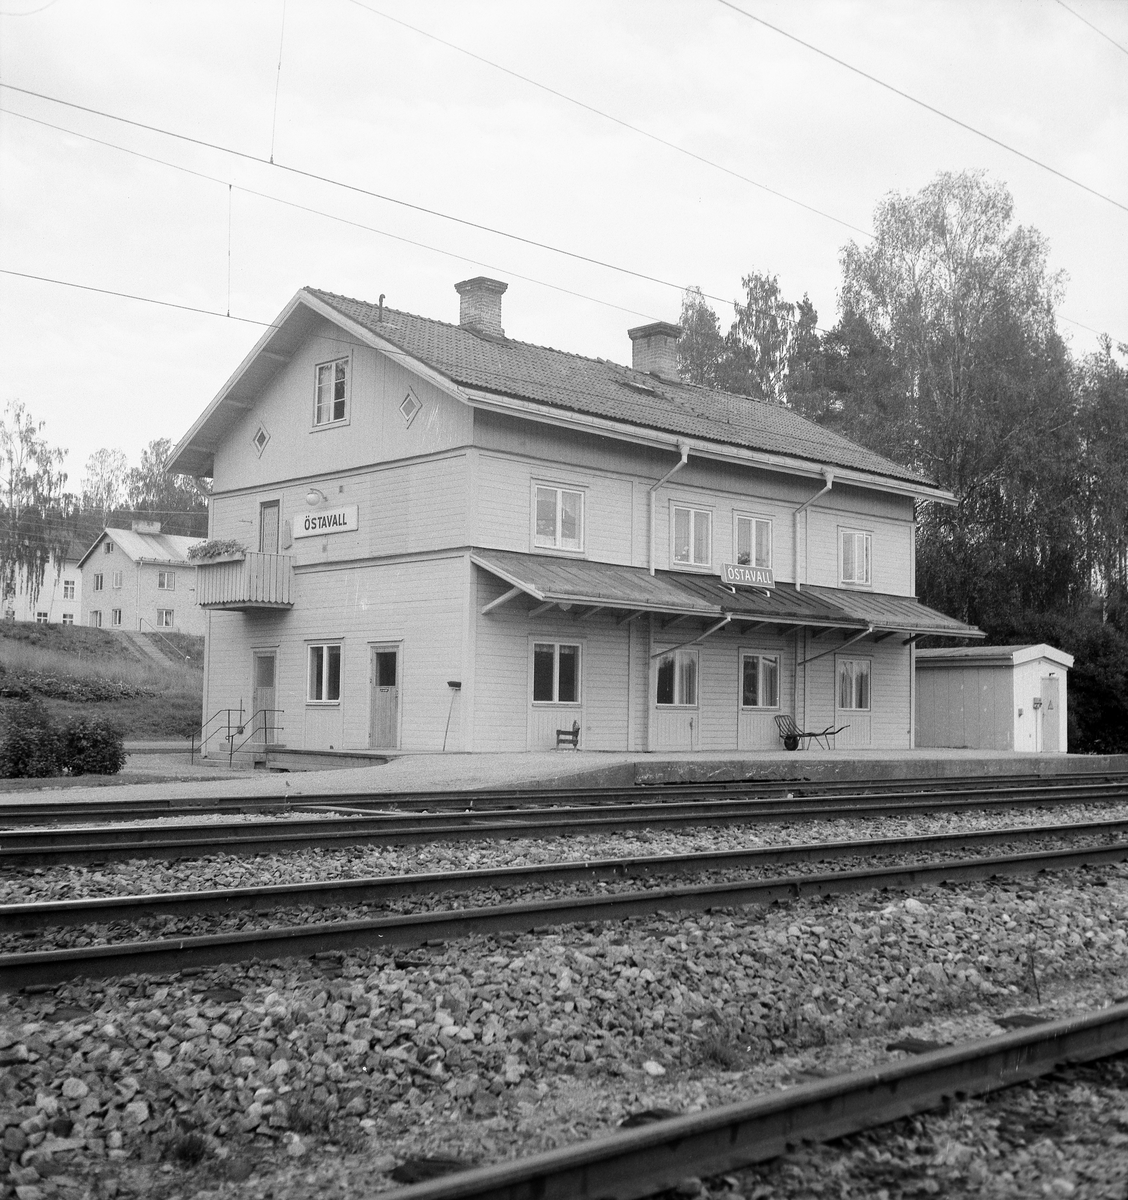 Östavall stationshus.